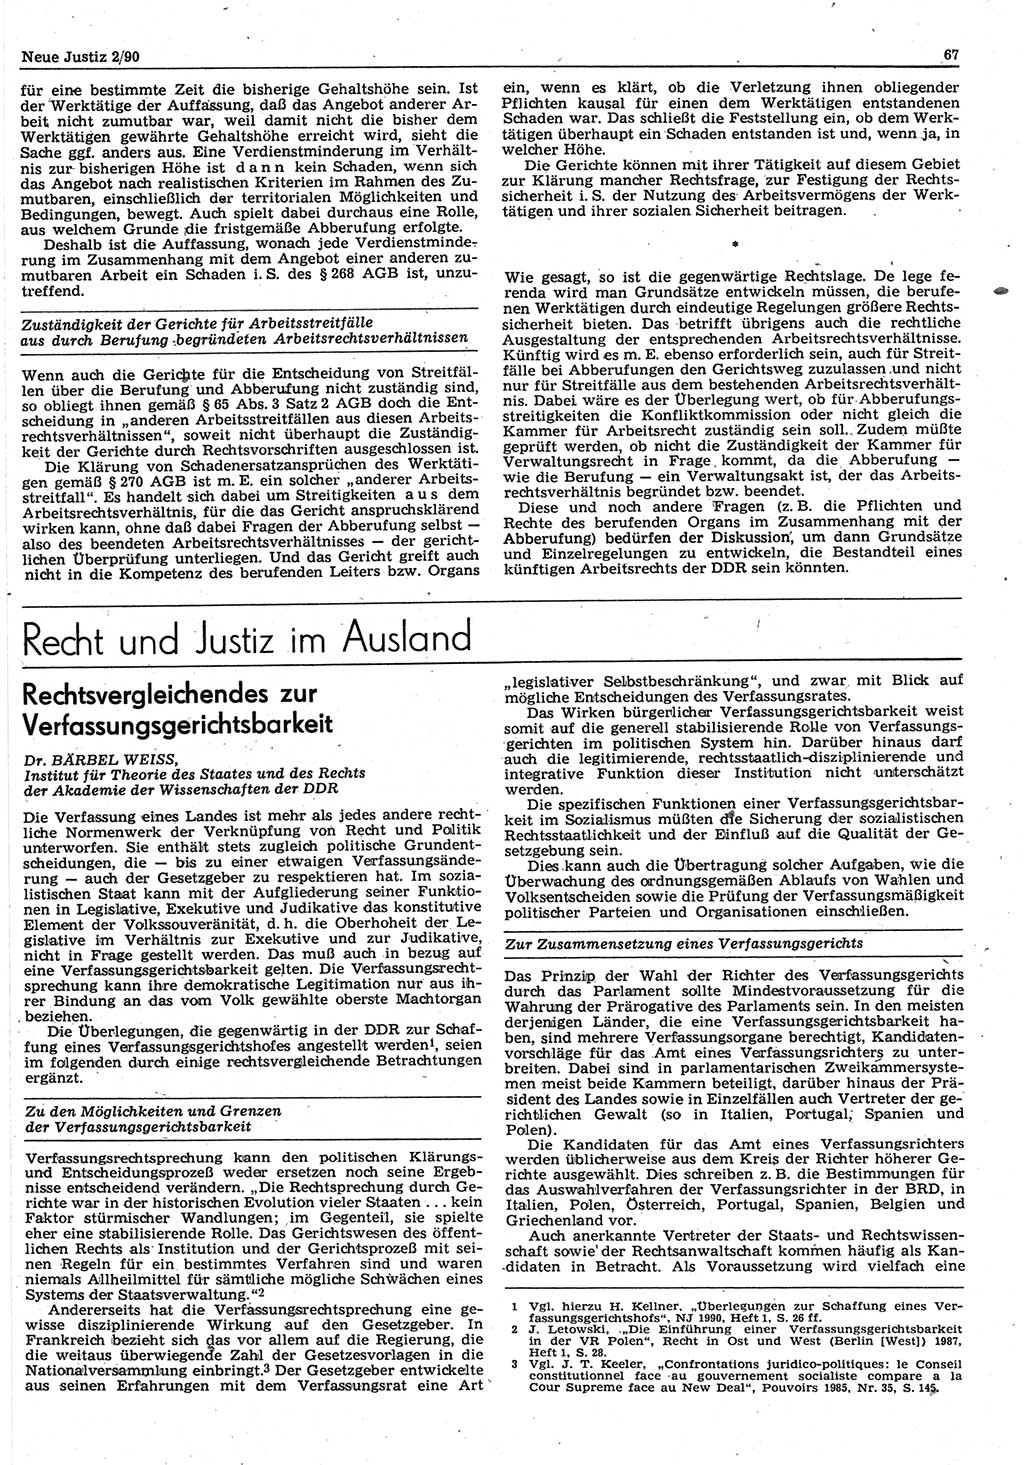 Neue Justiz (NJ), Zeitschrift für Rechtsetzung und Rechtsanwendung [Deutsche Demokratische Republik (DDR)], 44. Jahrgang 1990, Seite 67 (NJ DDR 1990, S. 67)